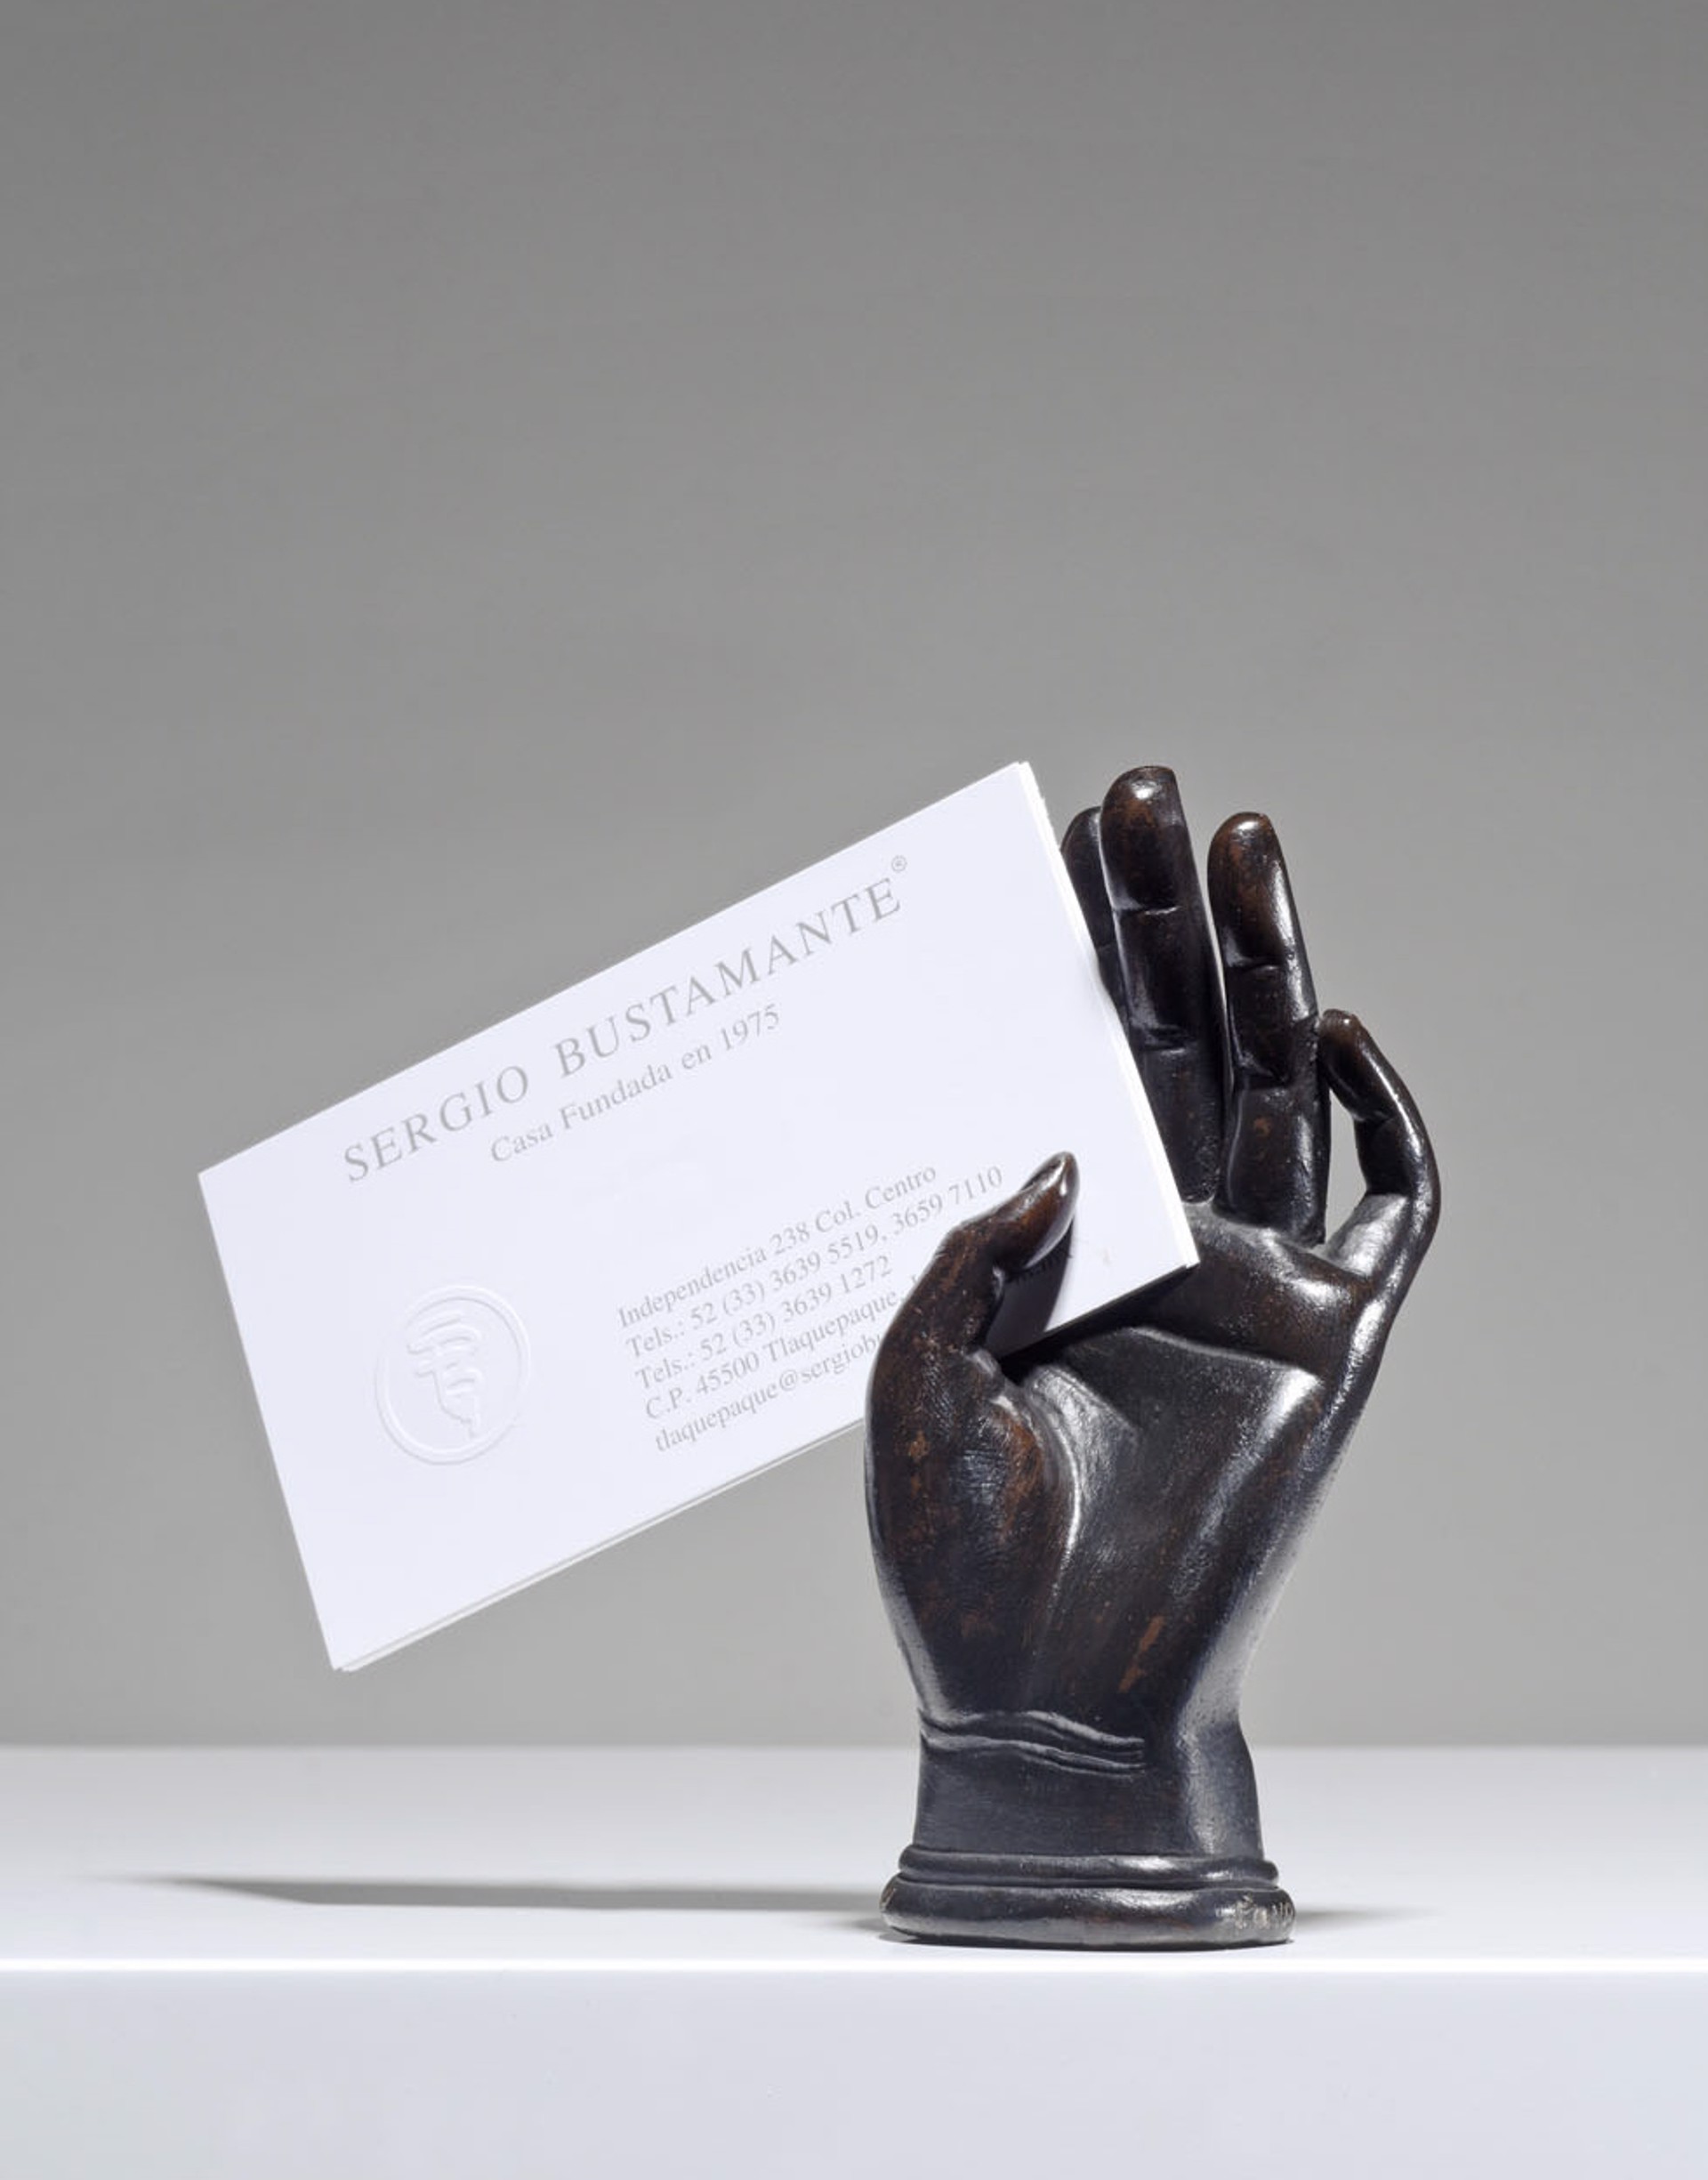 Hand Card Holder by Sergio Bustamante (sculptor)